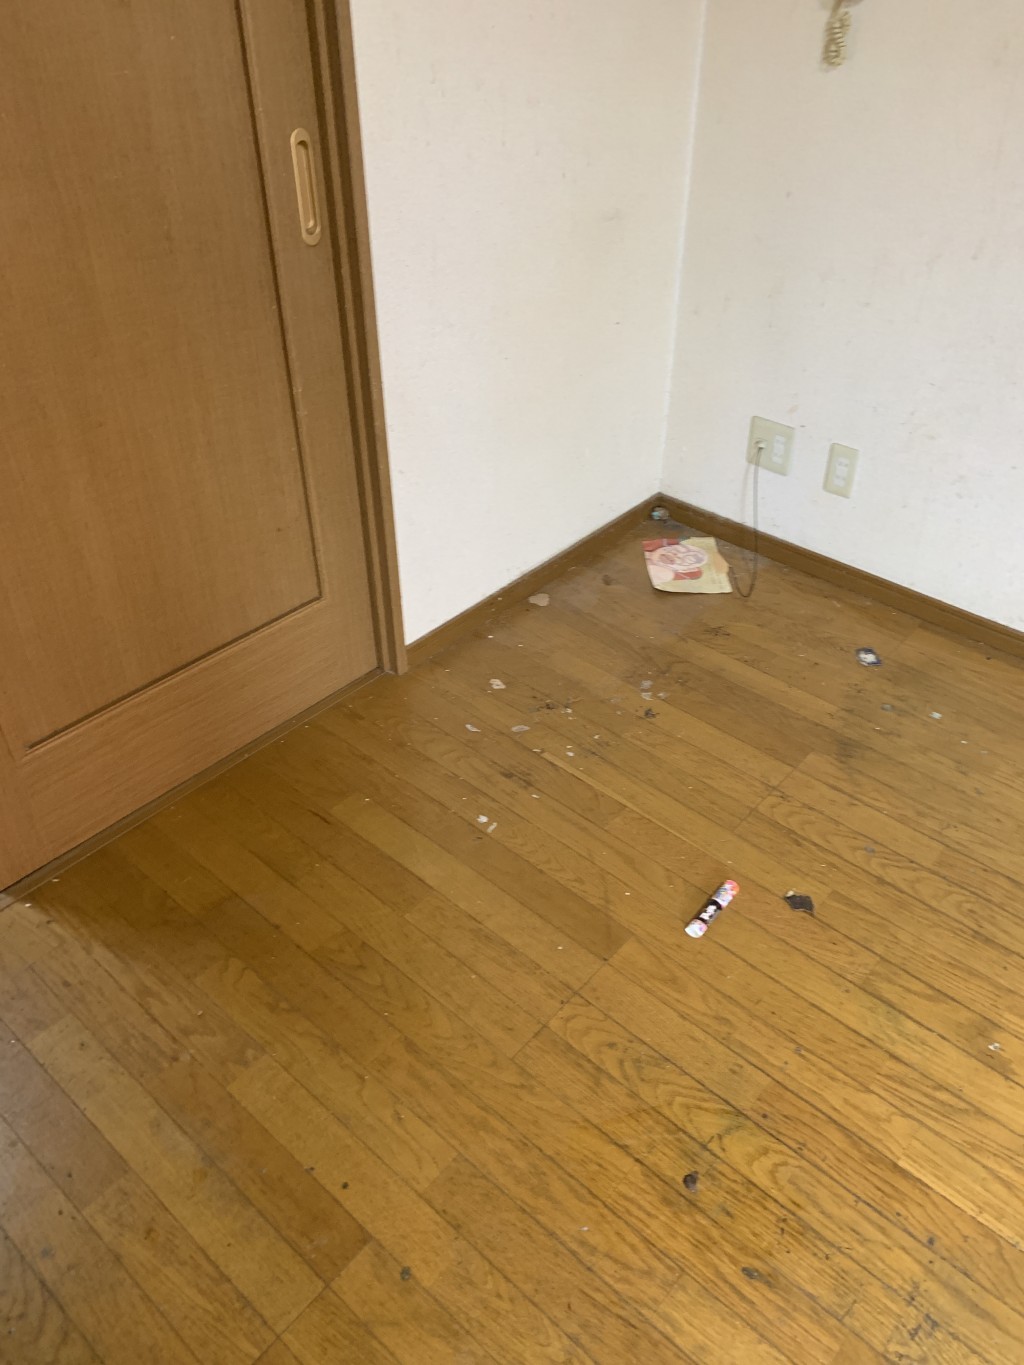 【桜川市】家庭ごみの回収と拭き掃除・掃き掃除のご依頼